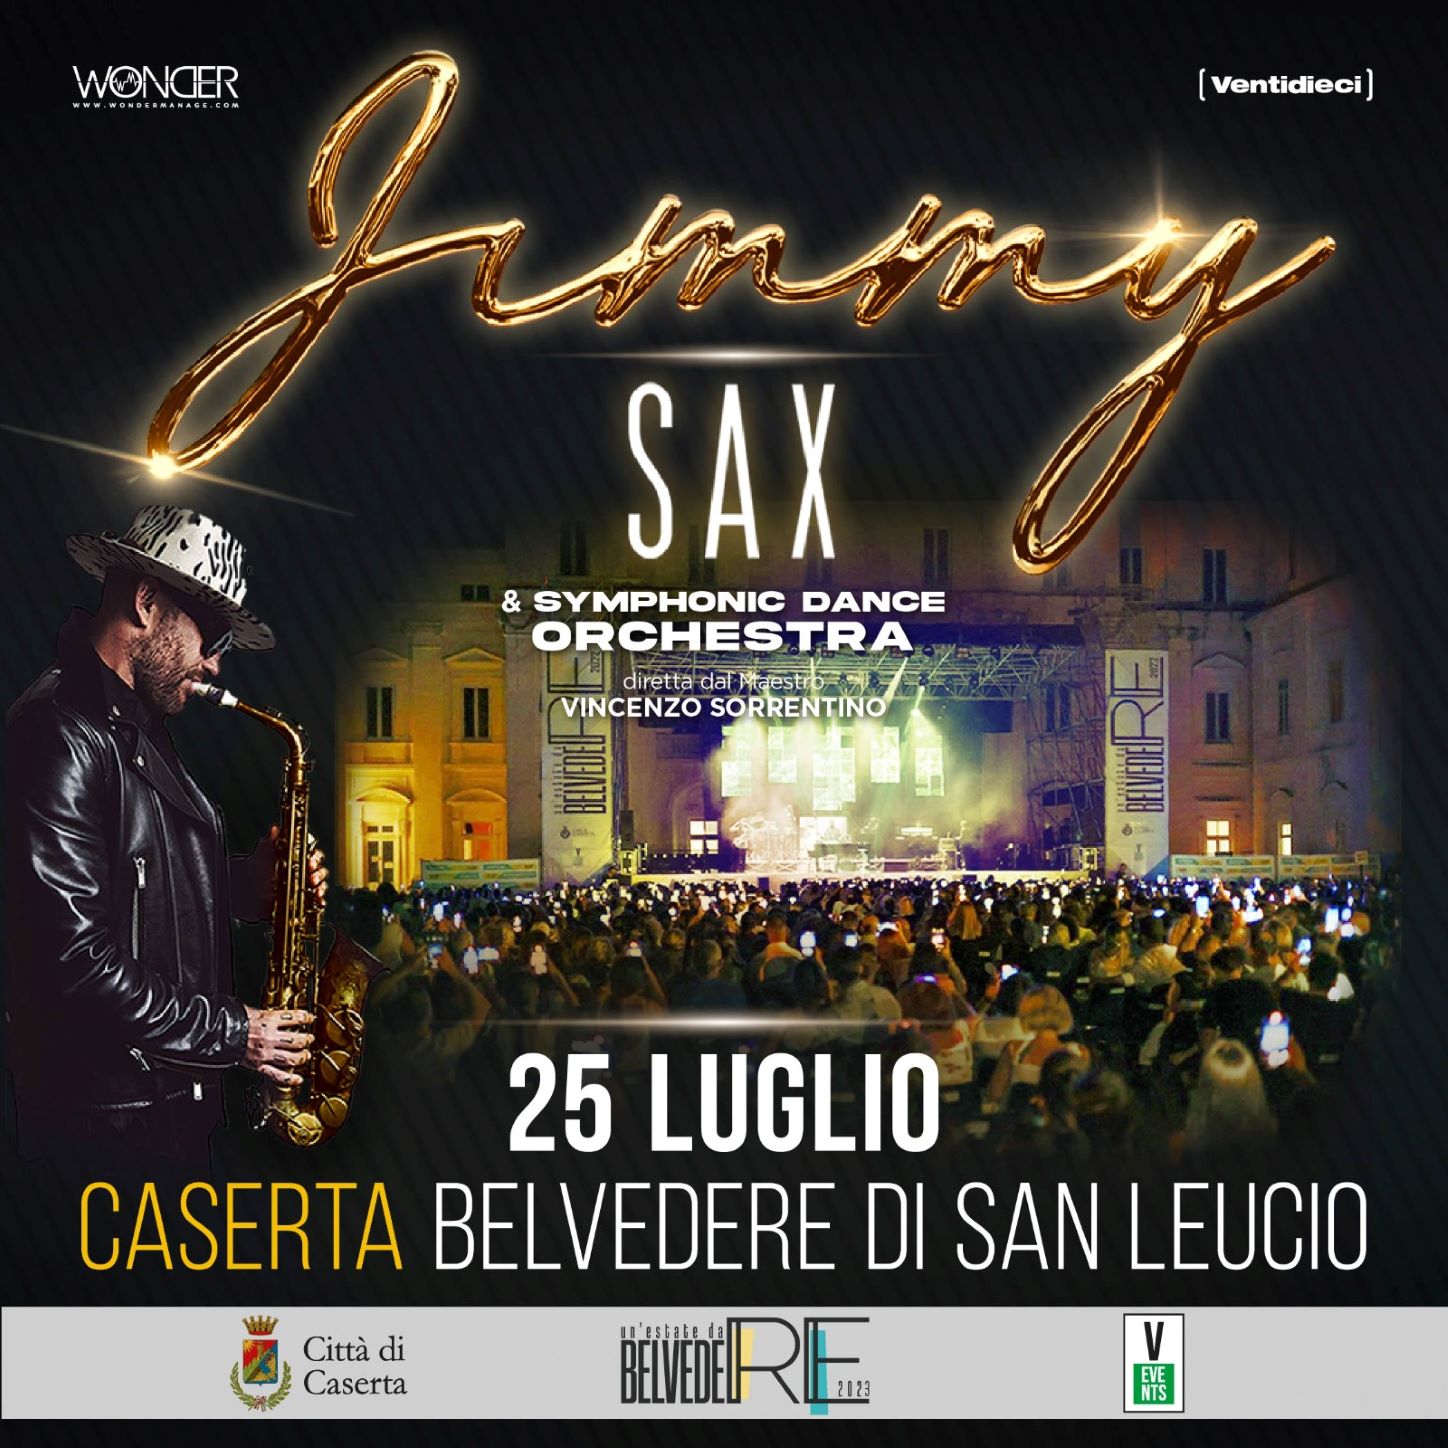 Jimmy Sax & Symphonic Dance Orchestra in concerto al Belvedere di San Leucio  - Napolitan.it